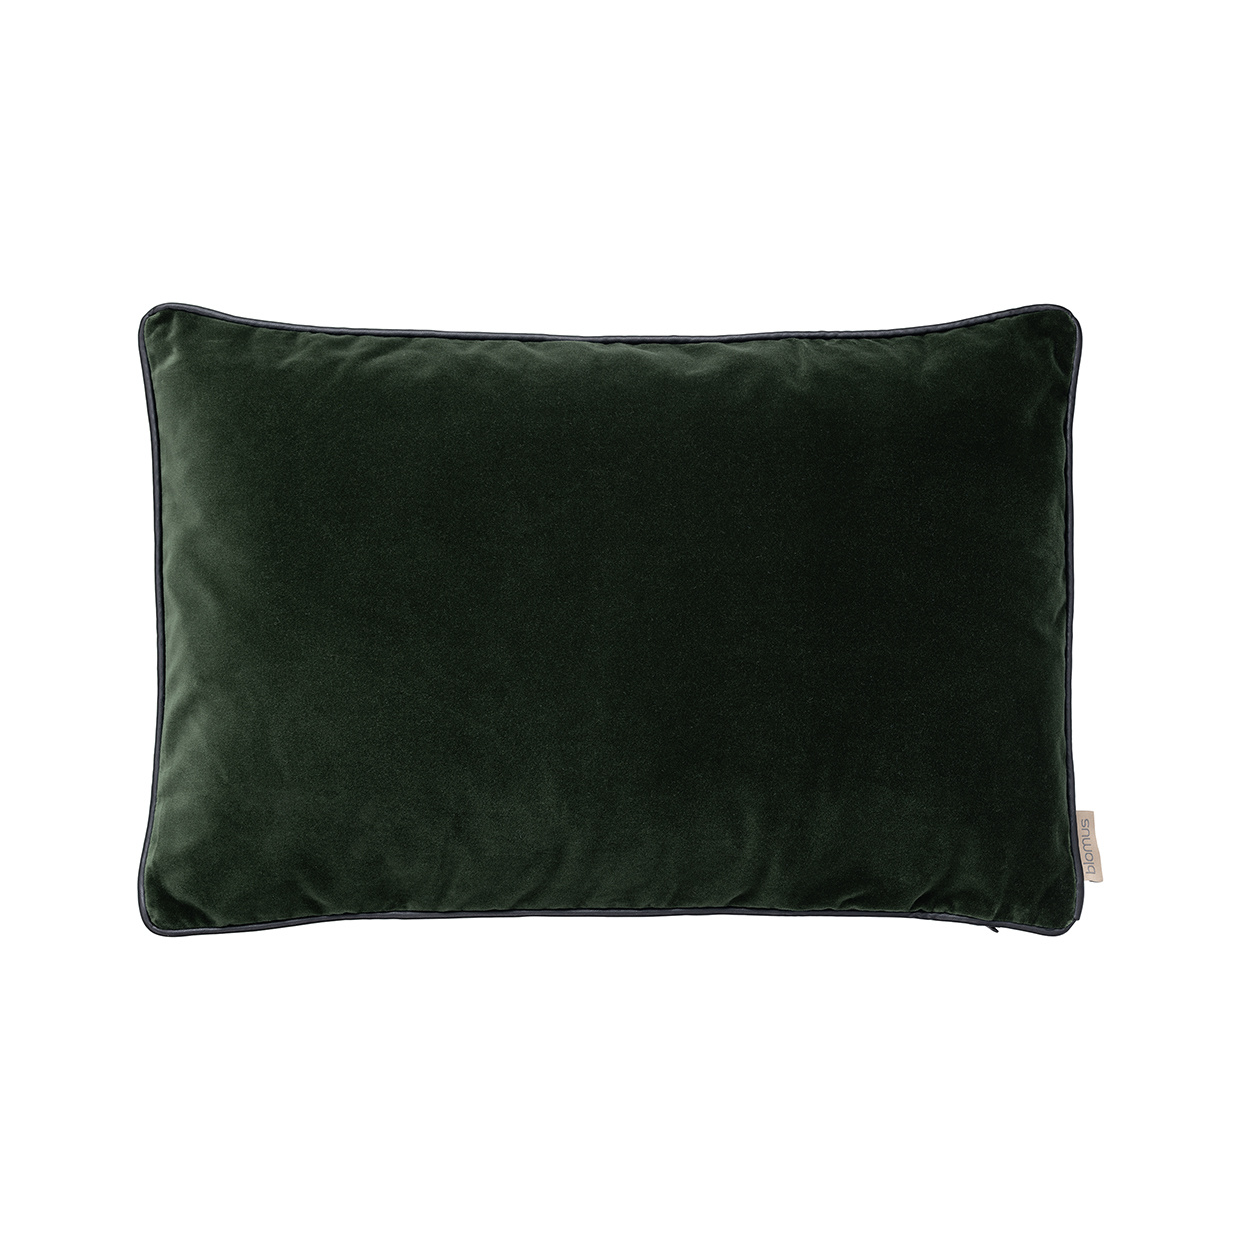 Blomus Fodera per cuscino in VELLUTO 40 x 60 cm - colore Duck Green (66575)  - Bath & Living